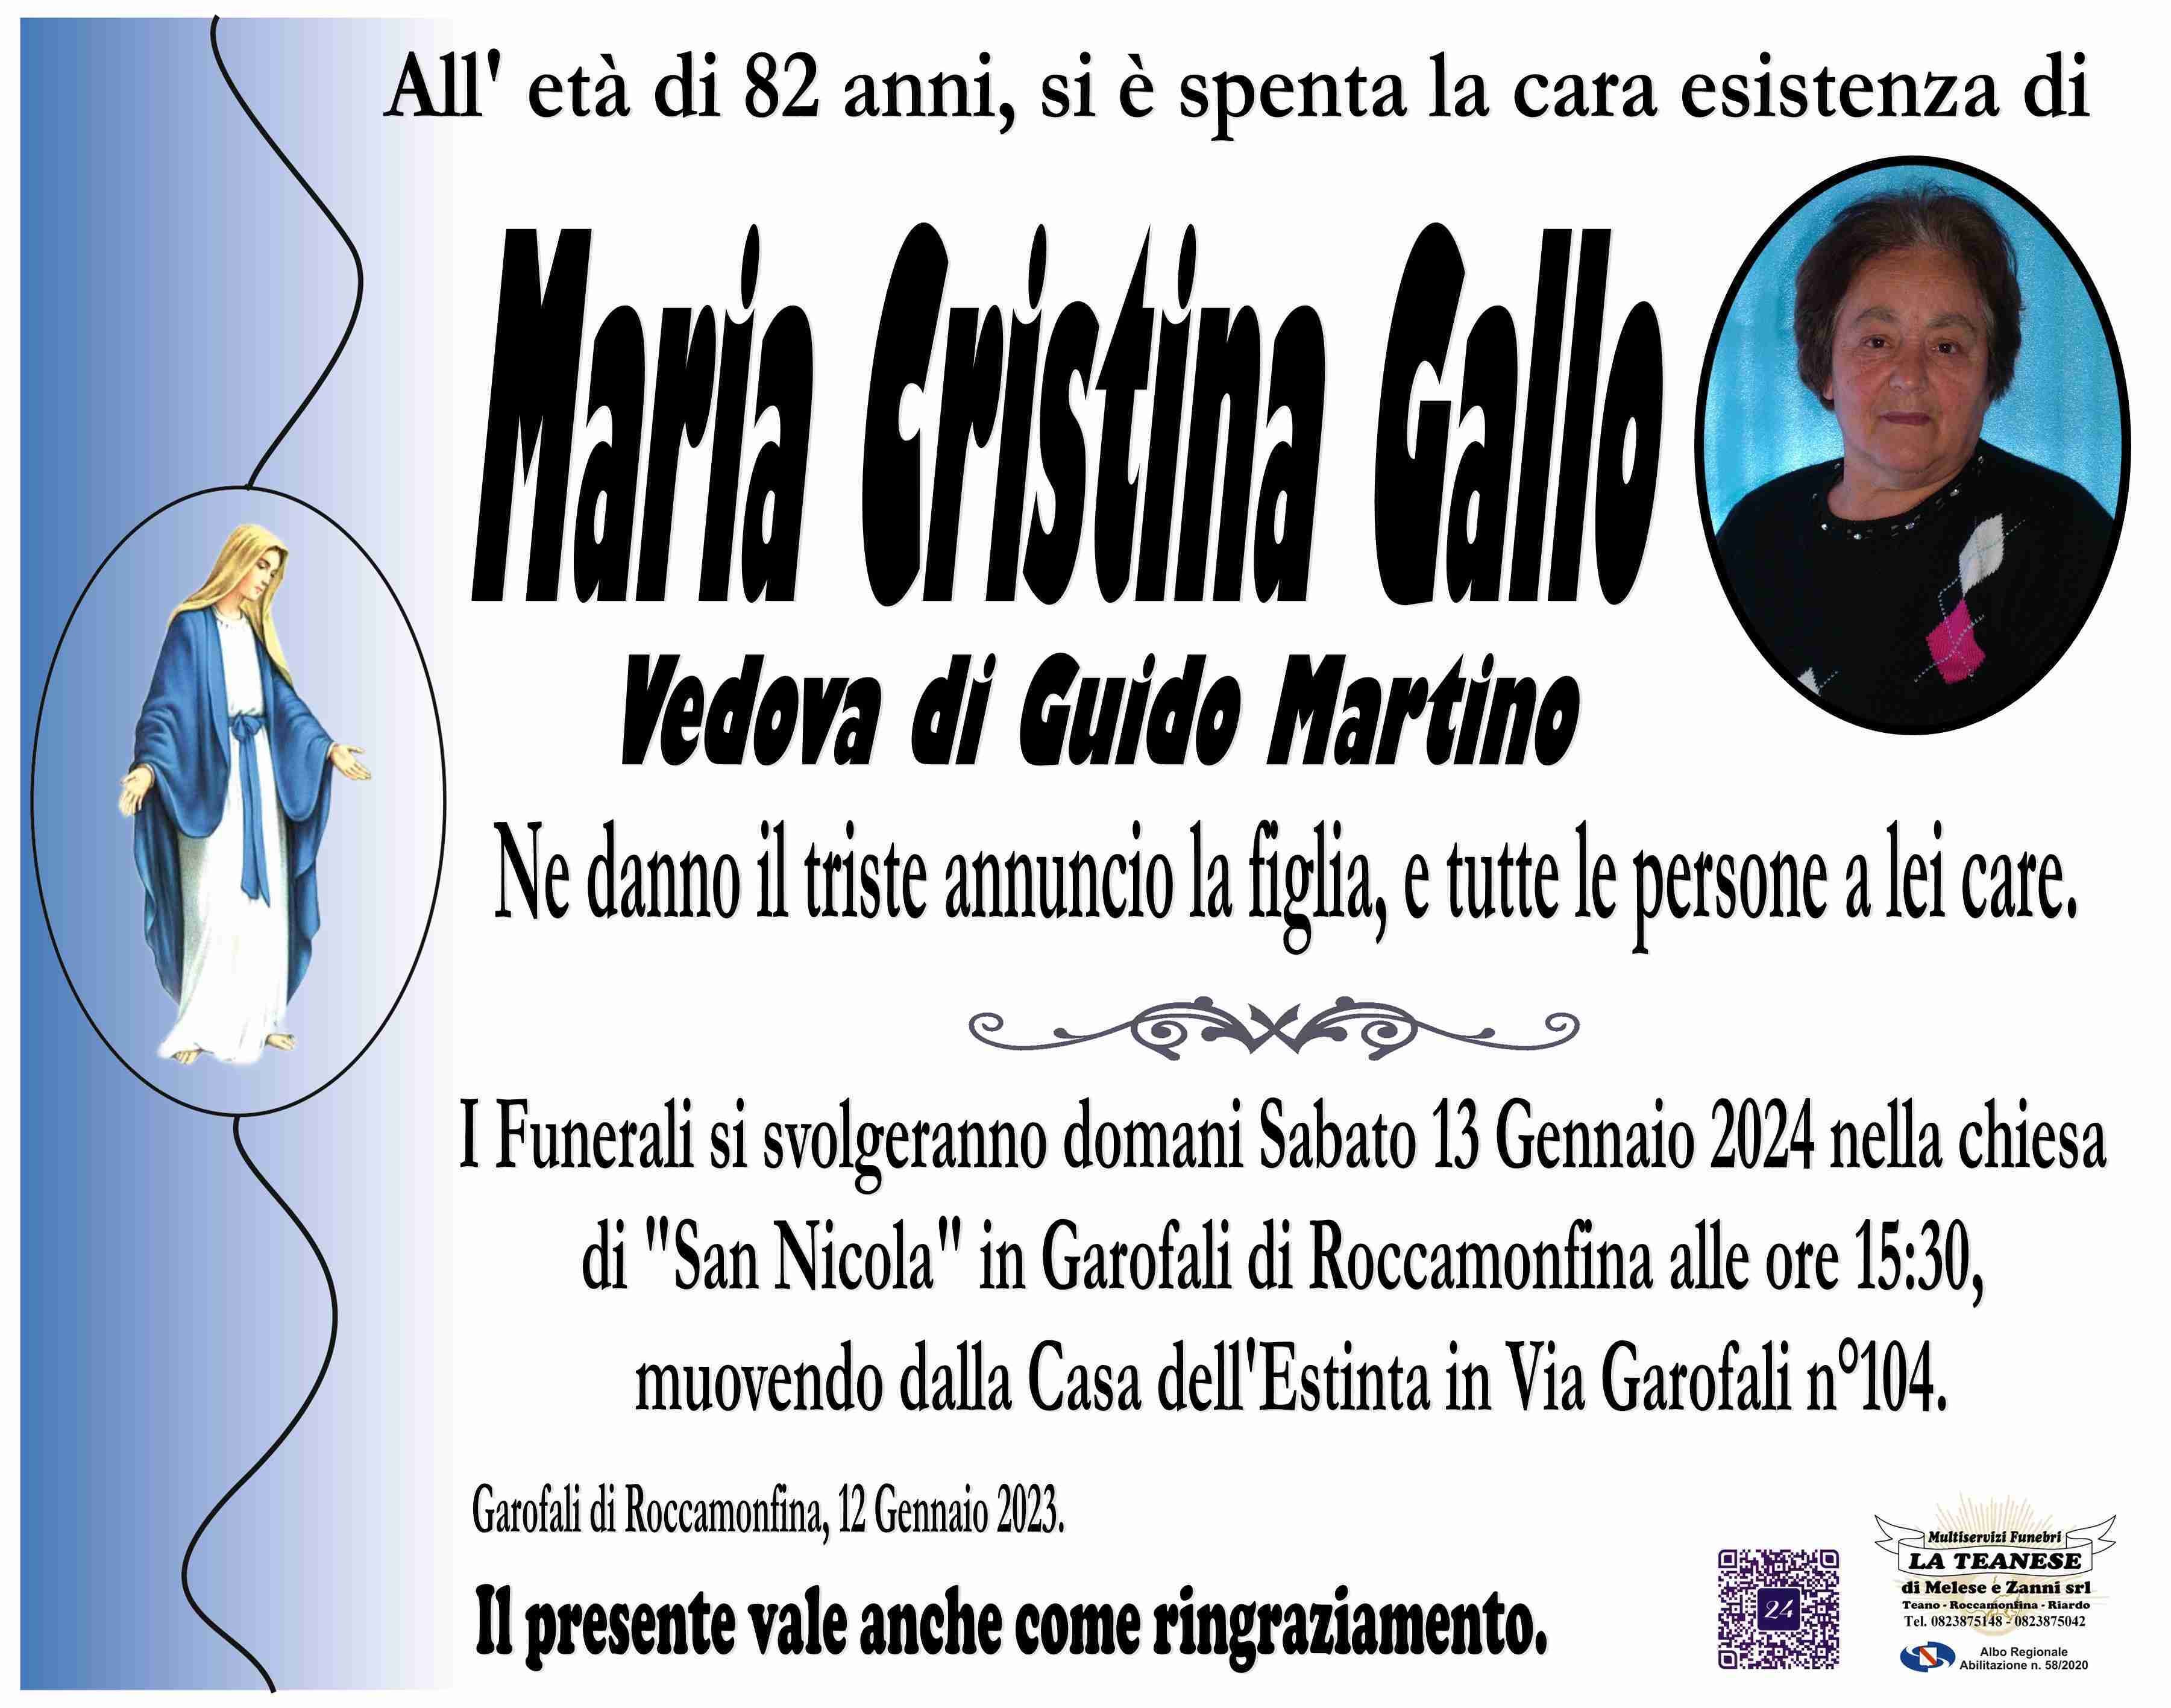 Maria Cristina Gallo